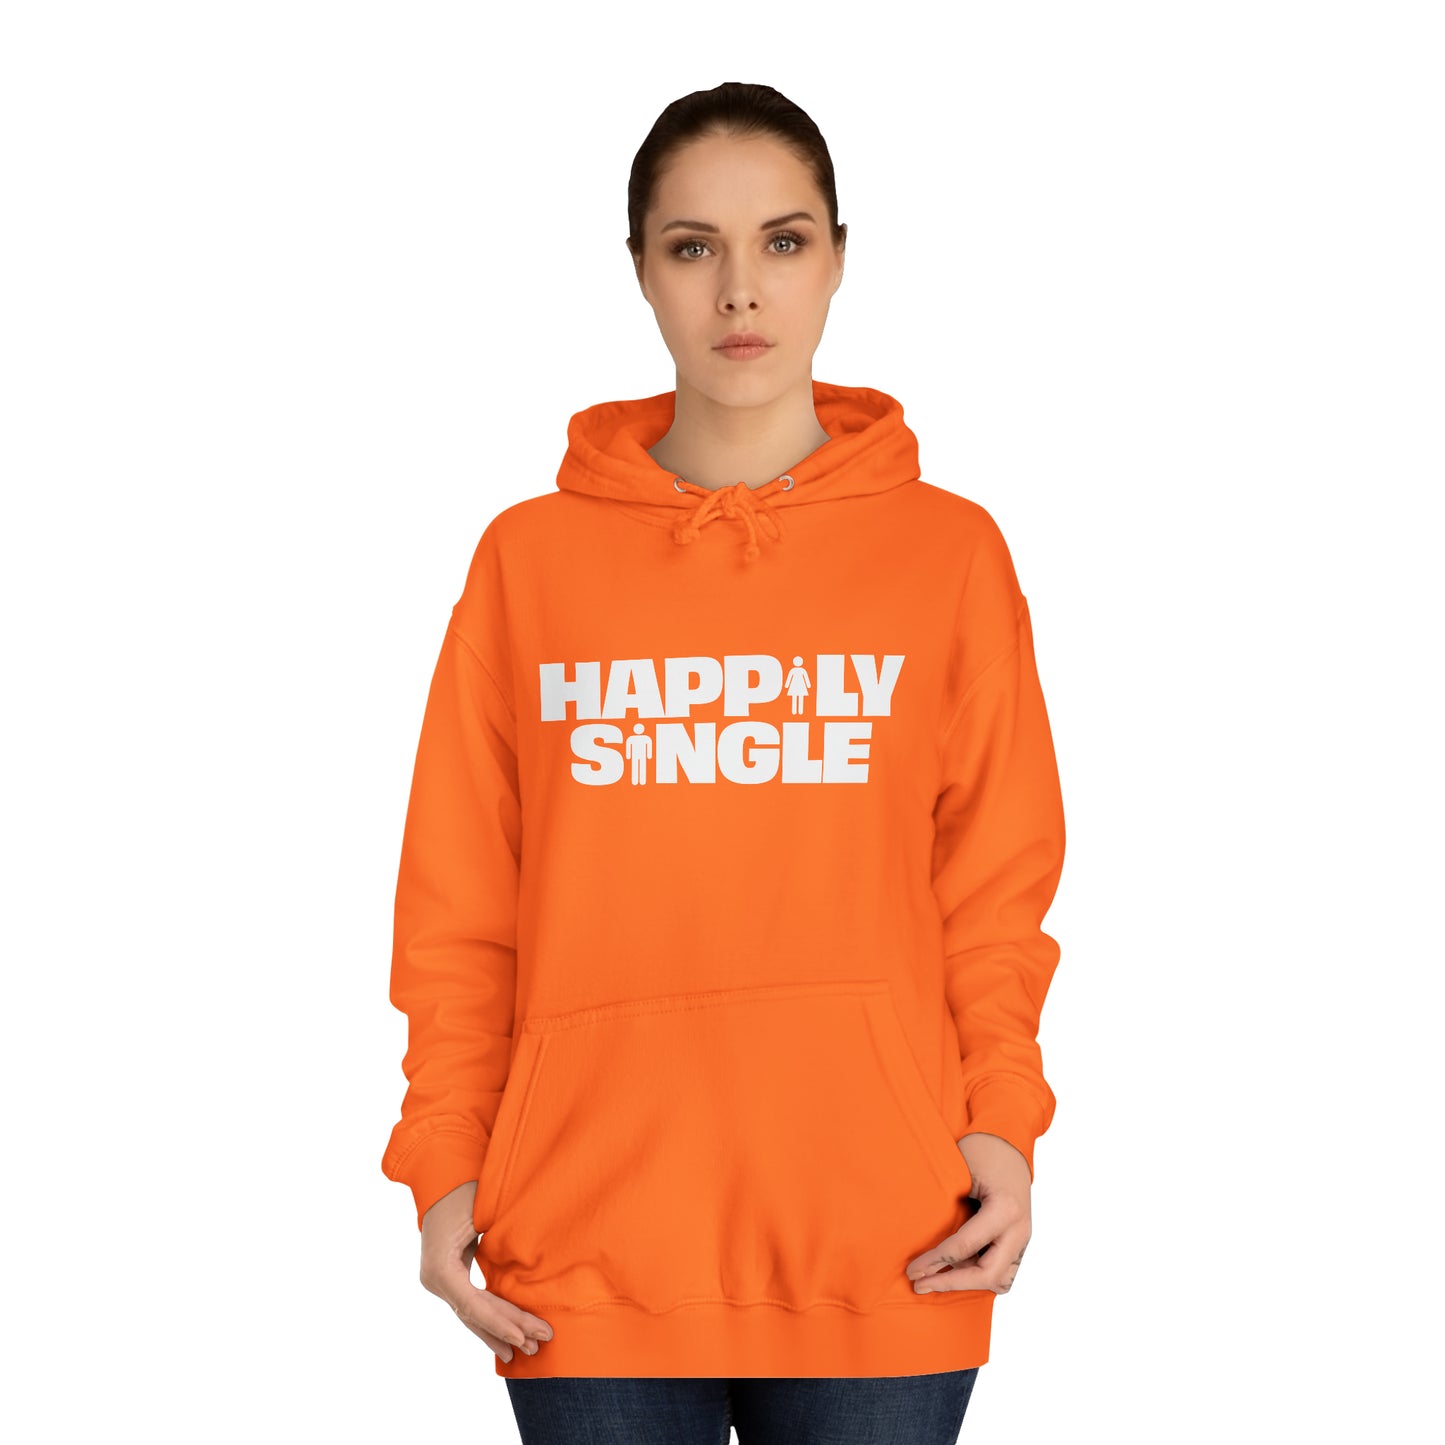 Happily Single Hoodie